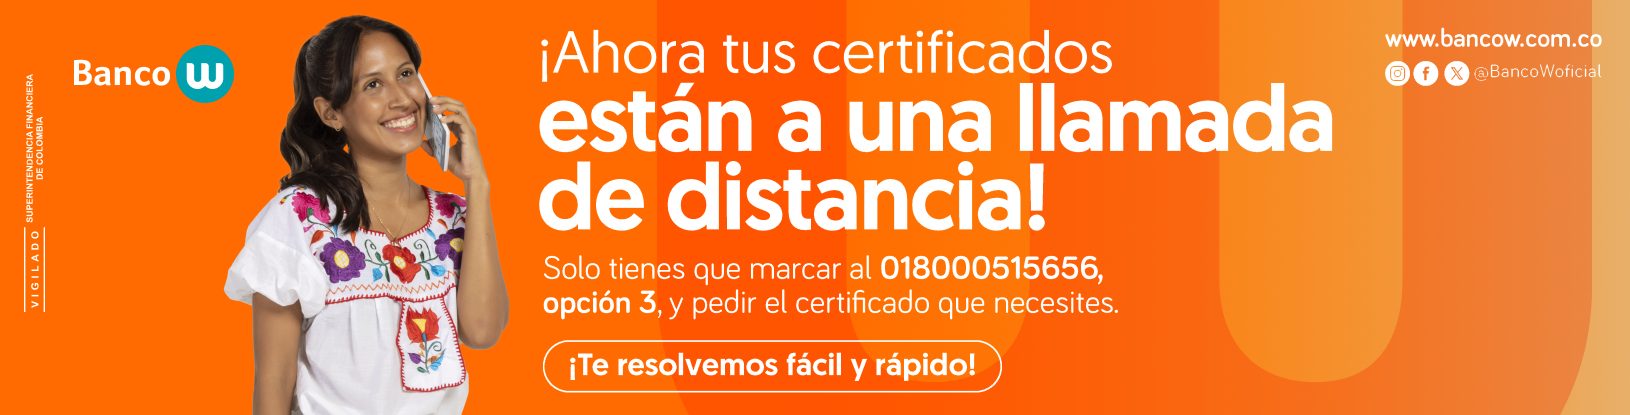 ¡Ahora tus certificados están a una llamada de distancia! Solo tienes que marcar al 018000515656, opción 3, y pedir el certificado que necesites. ¡Te resolvemos fácil y rápido!